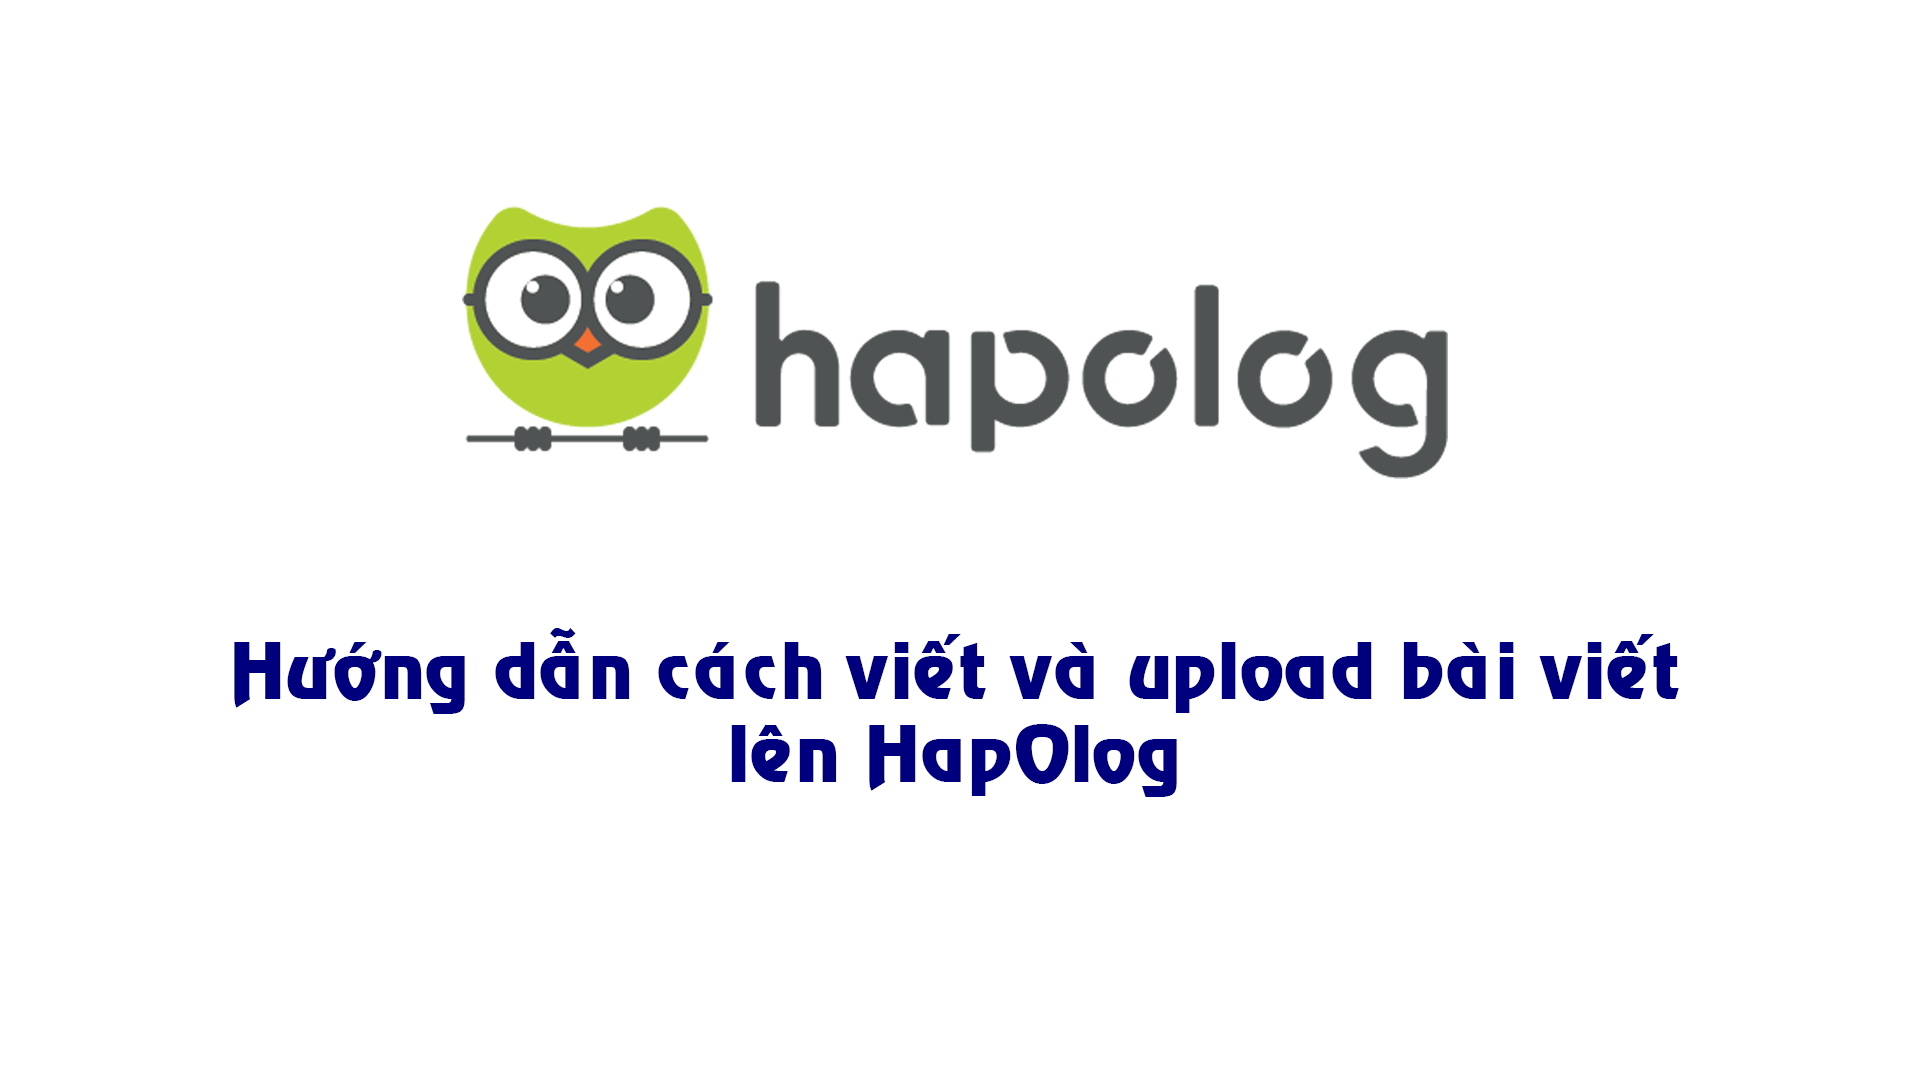 Hướng dẫn cách viết và công khai bài viết lên HapOlog